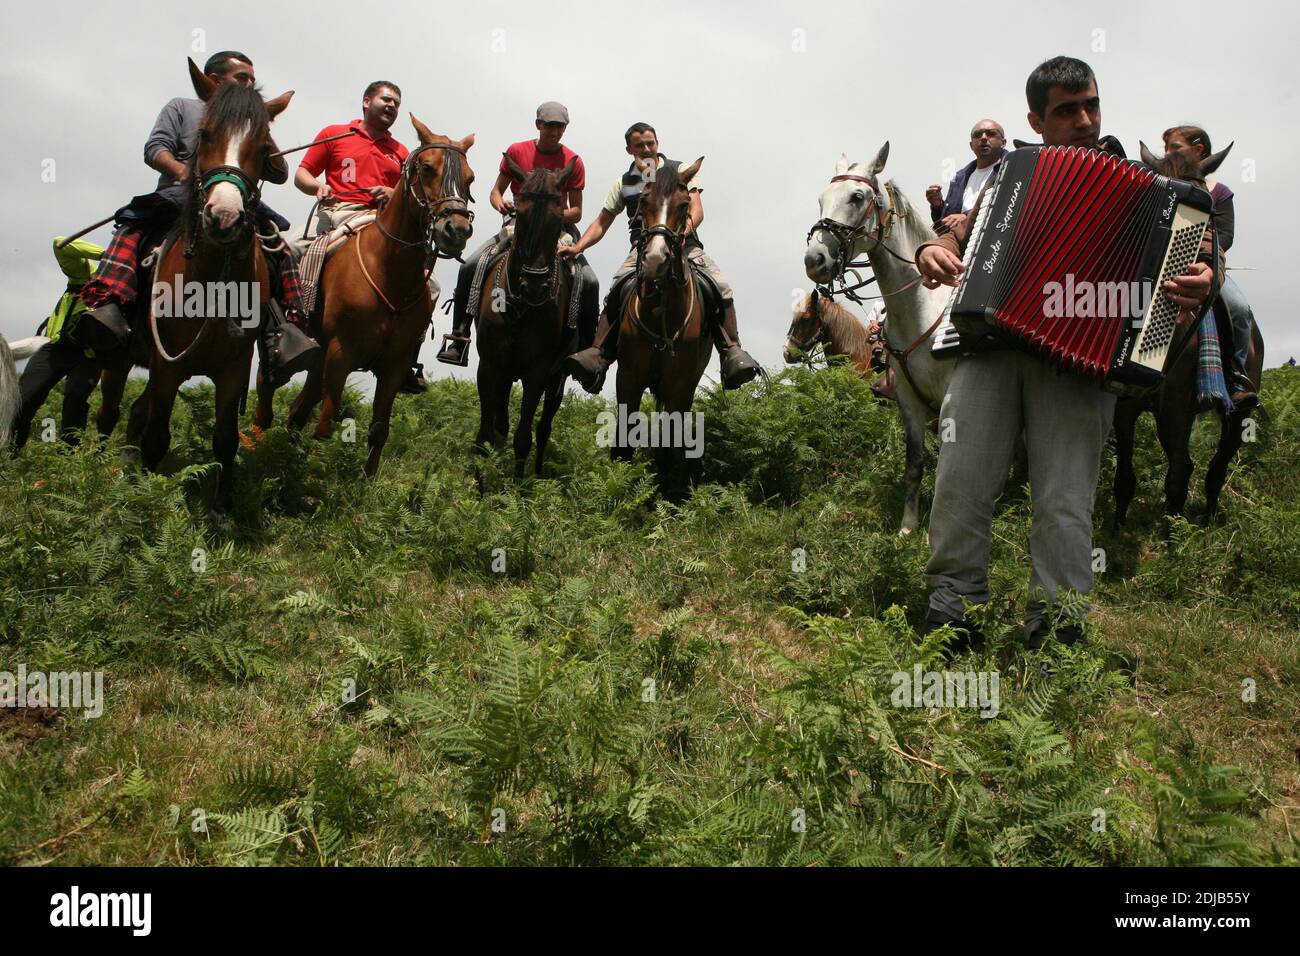 Les habitants chantent dans les montagnes pendant la Rapa das Bestas à proximité du village de Sabucedo en Galice, en Espagne. Les chevaux galiciens vivent gratuitement dans les pâturages des hautes terres tout au long de l'année. Un jour de juillet, six cents chevaux sont conduits ensemble jusqu'au village, où le festival traditionnel de la course de chevaux connu sous le nom de Rapa das Bestas (la tonte des bêtes) a lieu dans l'arène ronde connue sous le nom de curro. Les courageux combattants locaux, connus sous le nom d'aloitadores, doivent faire selle à chaque cheval, se moquent après le déplacement soudain des hautes terres à l'arène, puis couper leurs queues et leurs lamanes. Banque D'Images